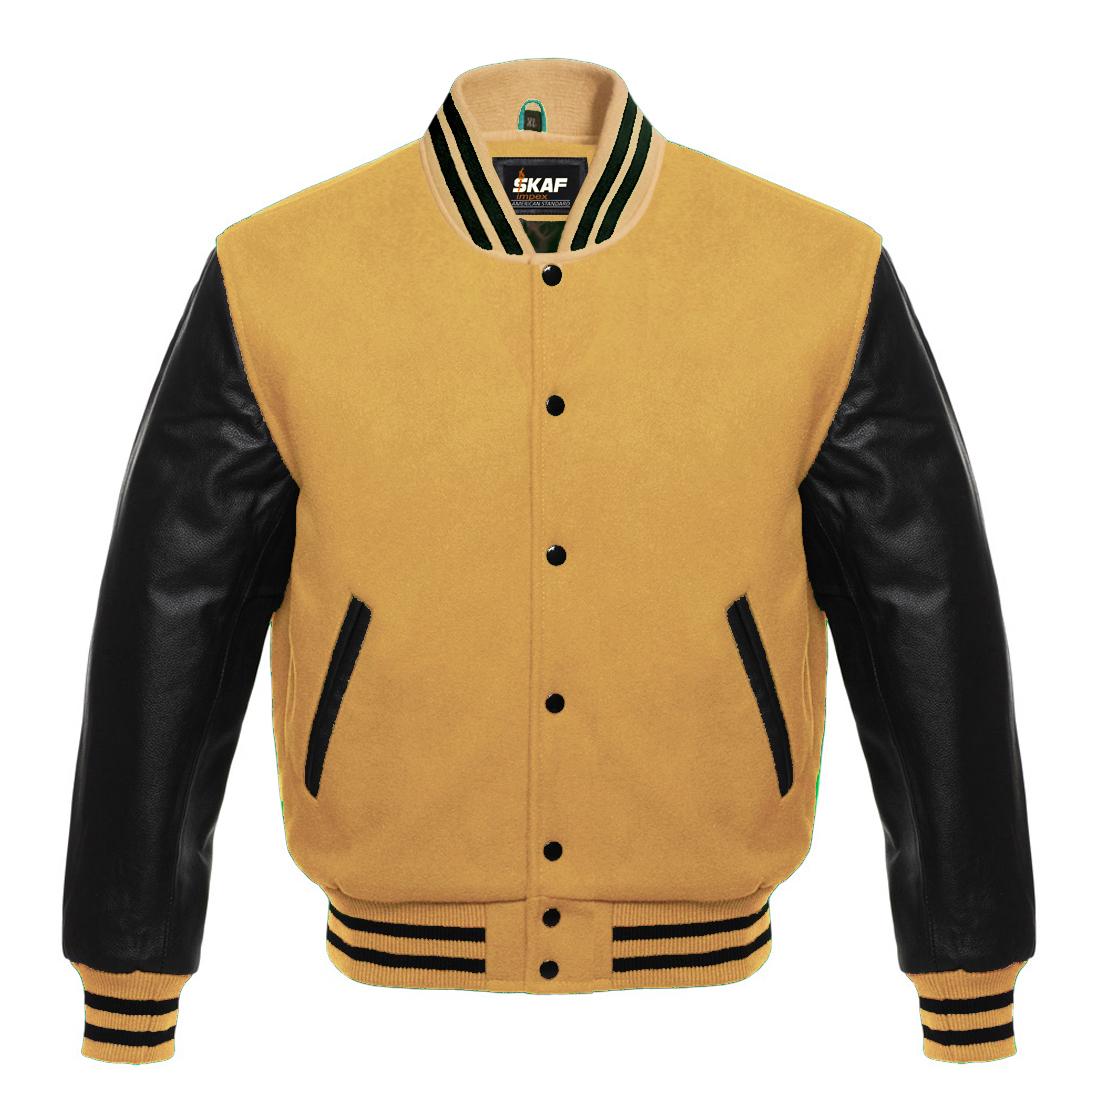 Black Wool & Gold Varsity Men's Letterman Baseball bomber Jacket